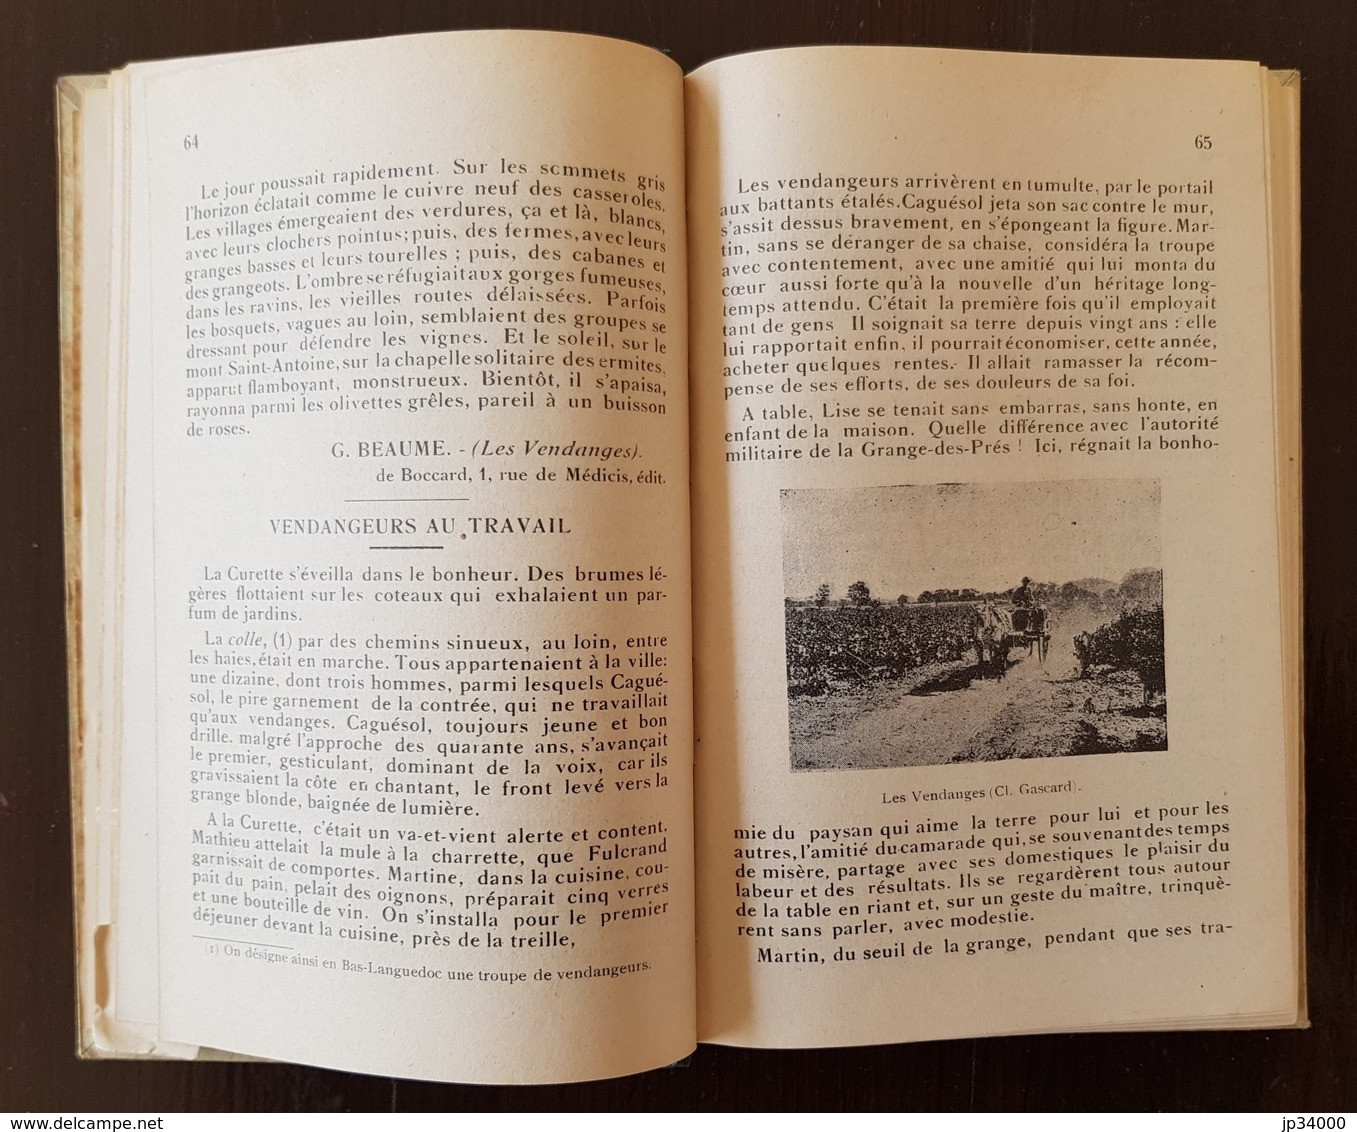 L'HERAULT GEOGRAPHIQUE & HISTORIQUE Choix De Lecture. Par Marres & Blanquet. 1930 - Languedoc-Roussillon